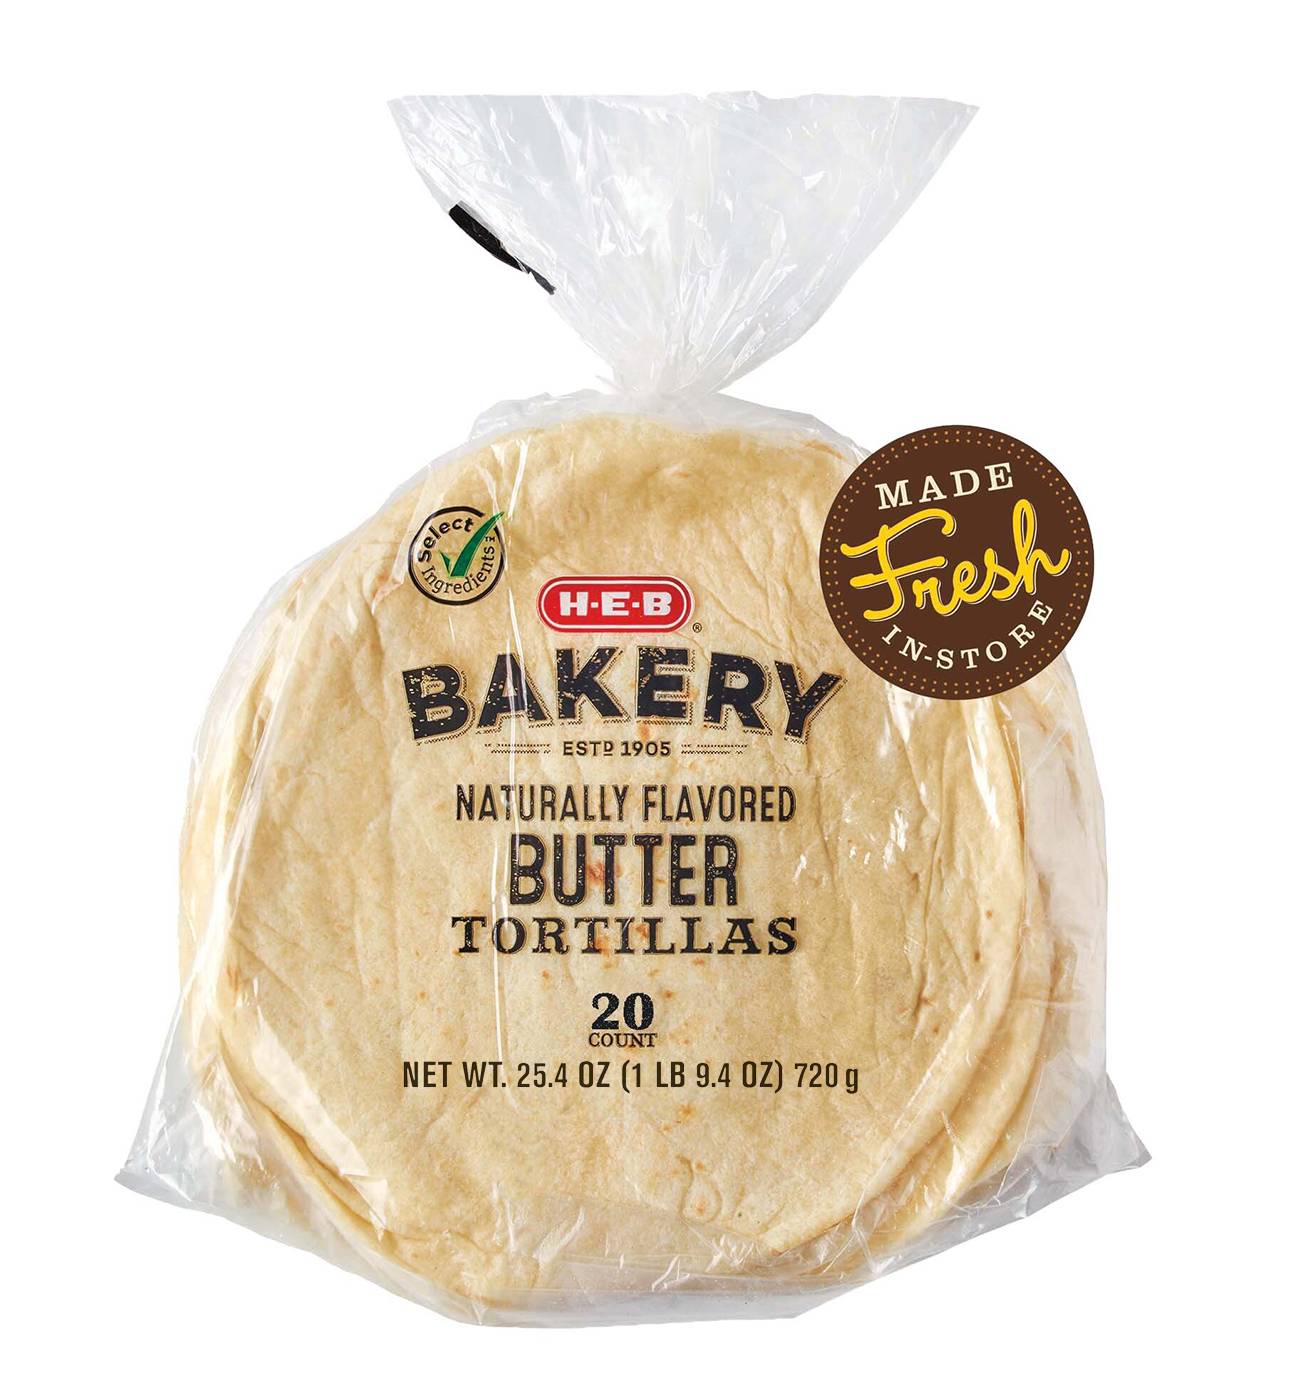 H-E-B Bakery Butter Flour Tortillas; image 1 of 2